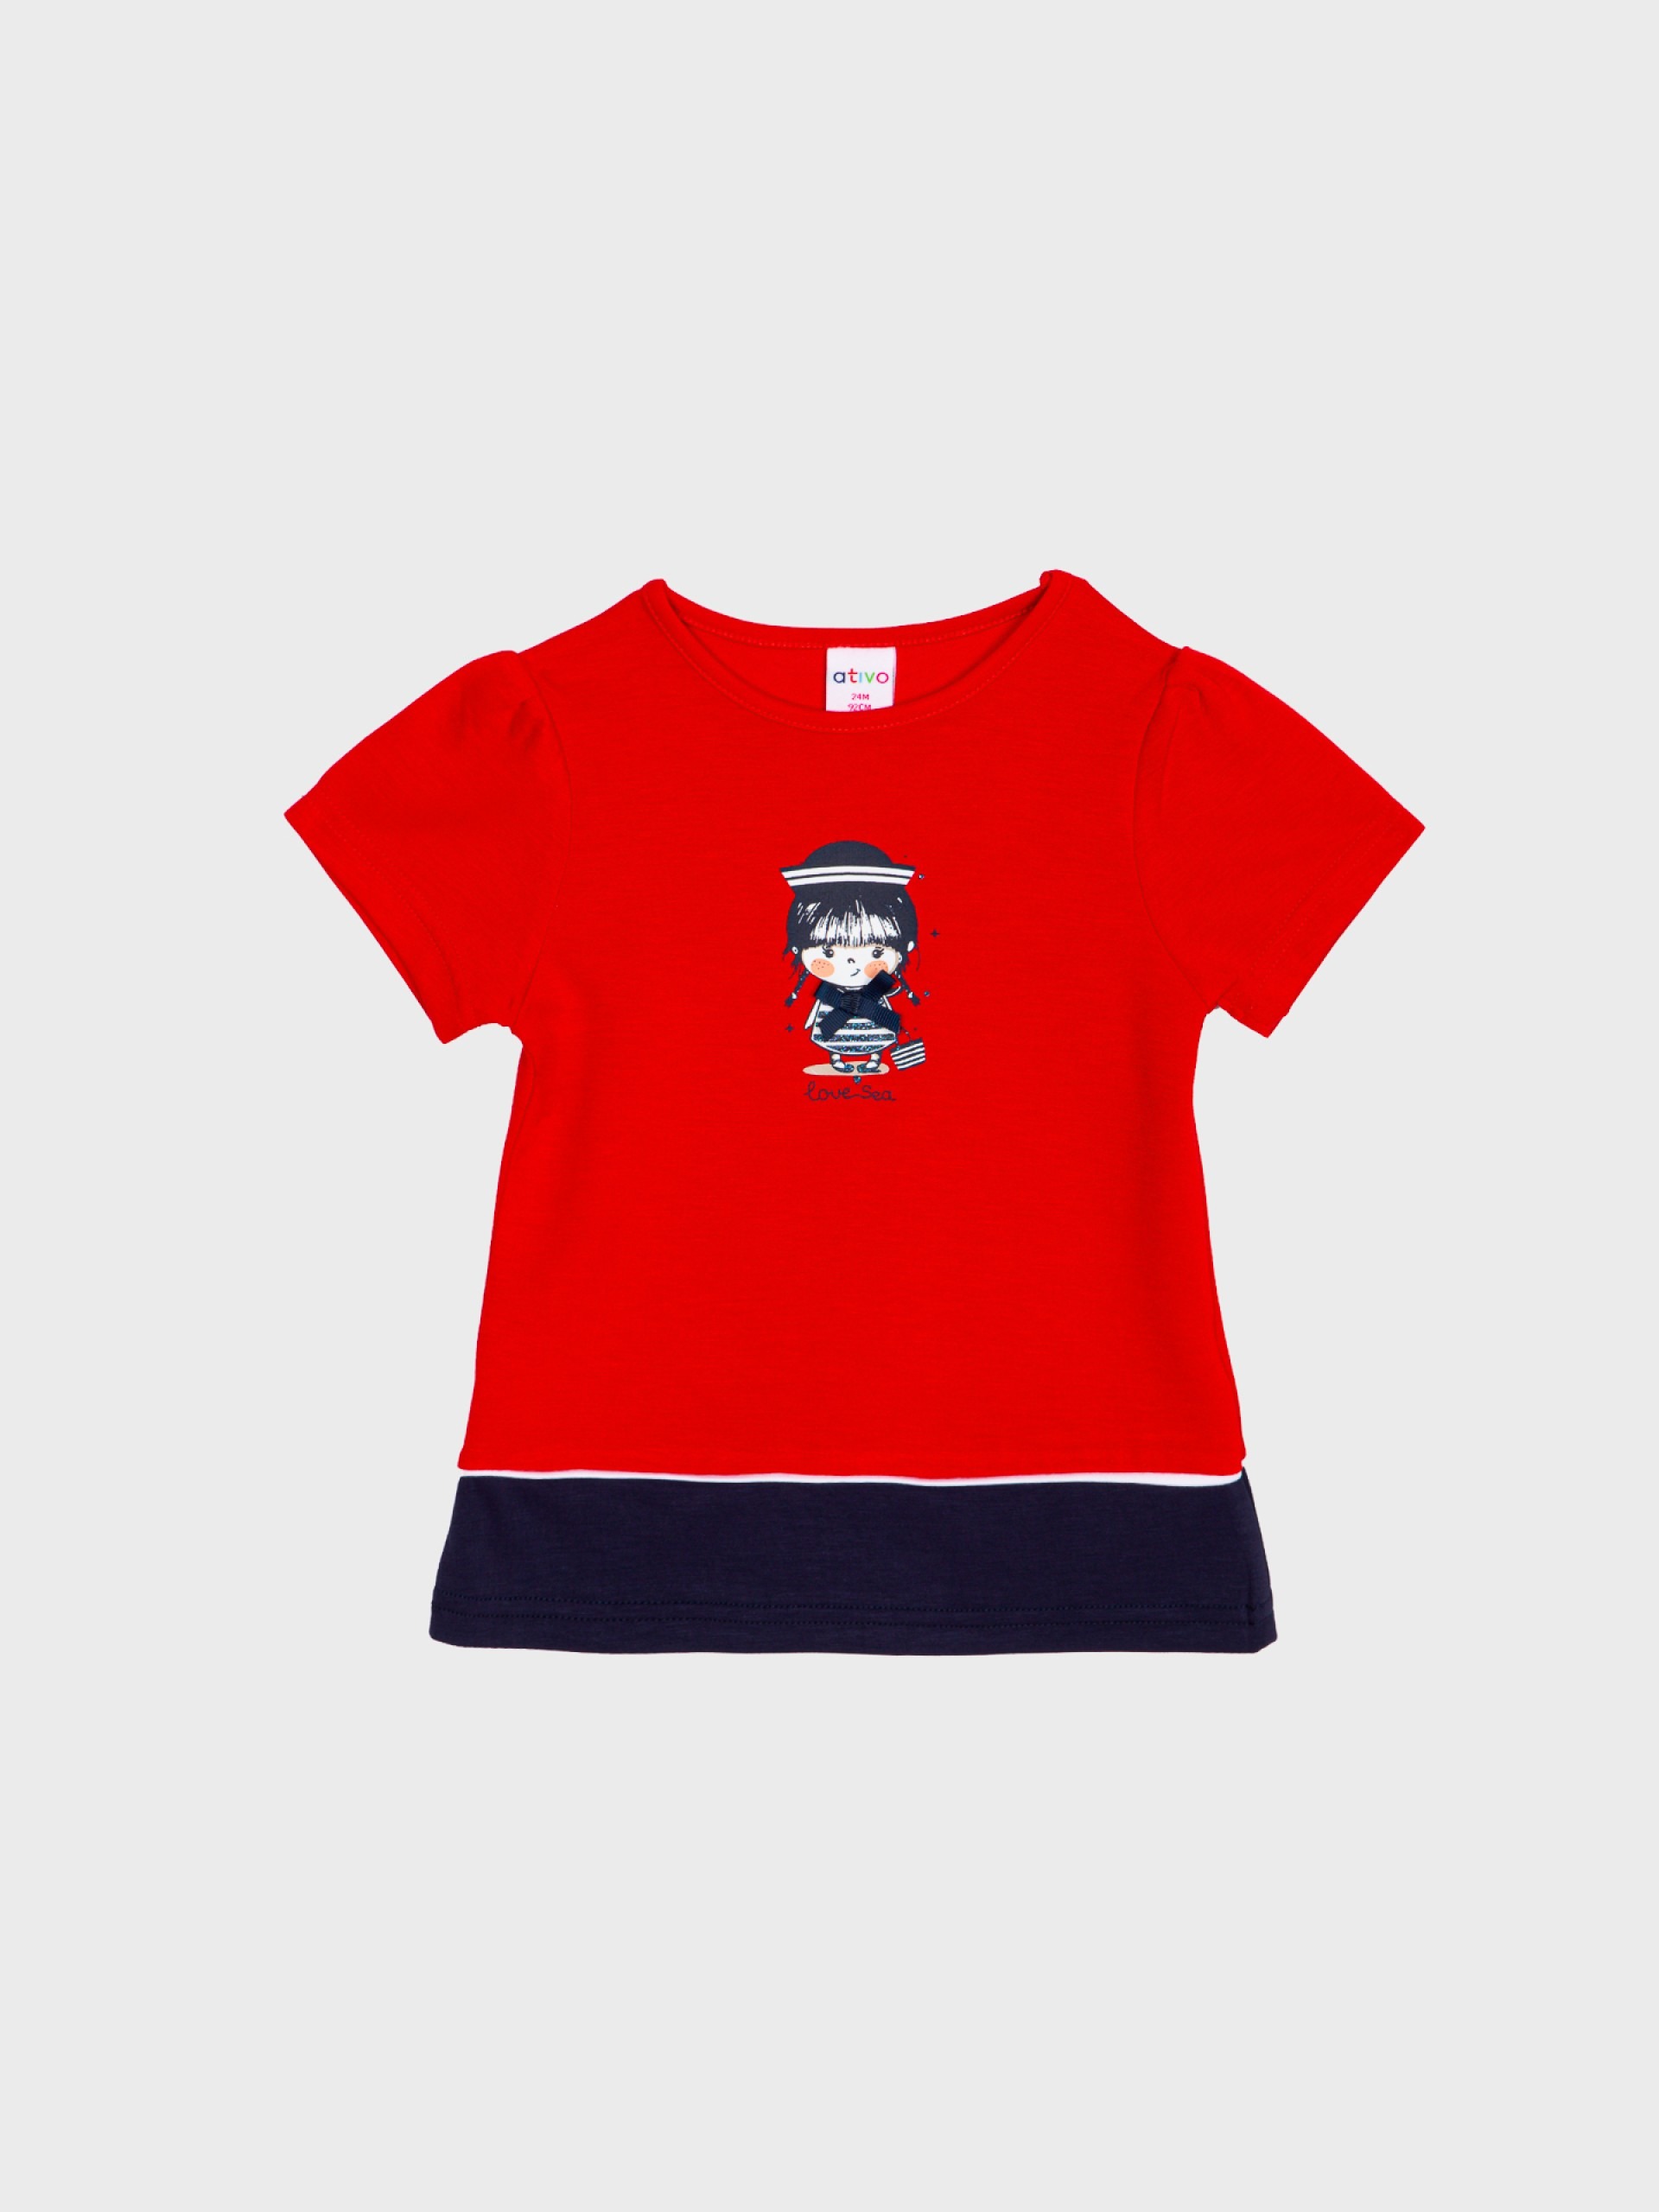 tunique rouge pour petite fille bébé agréable au toucher douce t-shirt idéal pour l'été confortable boutique saint martin en haut dans les monts du lyonnais